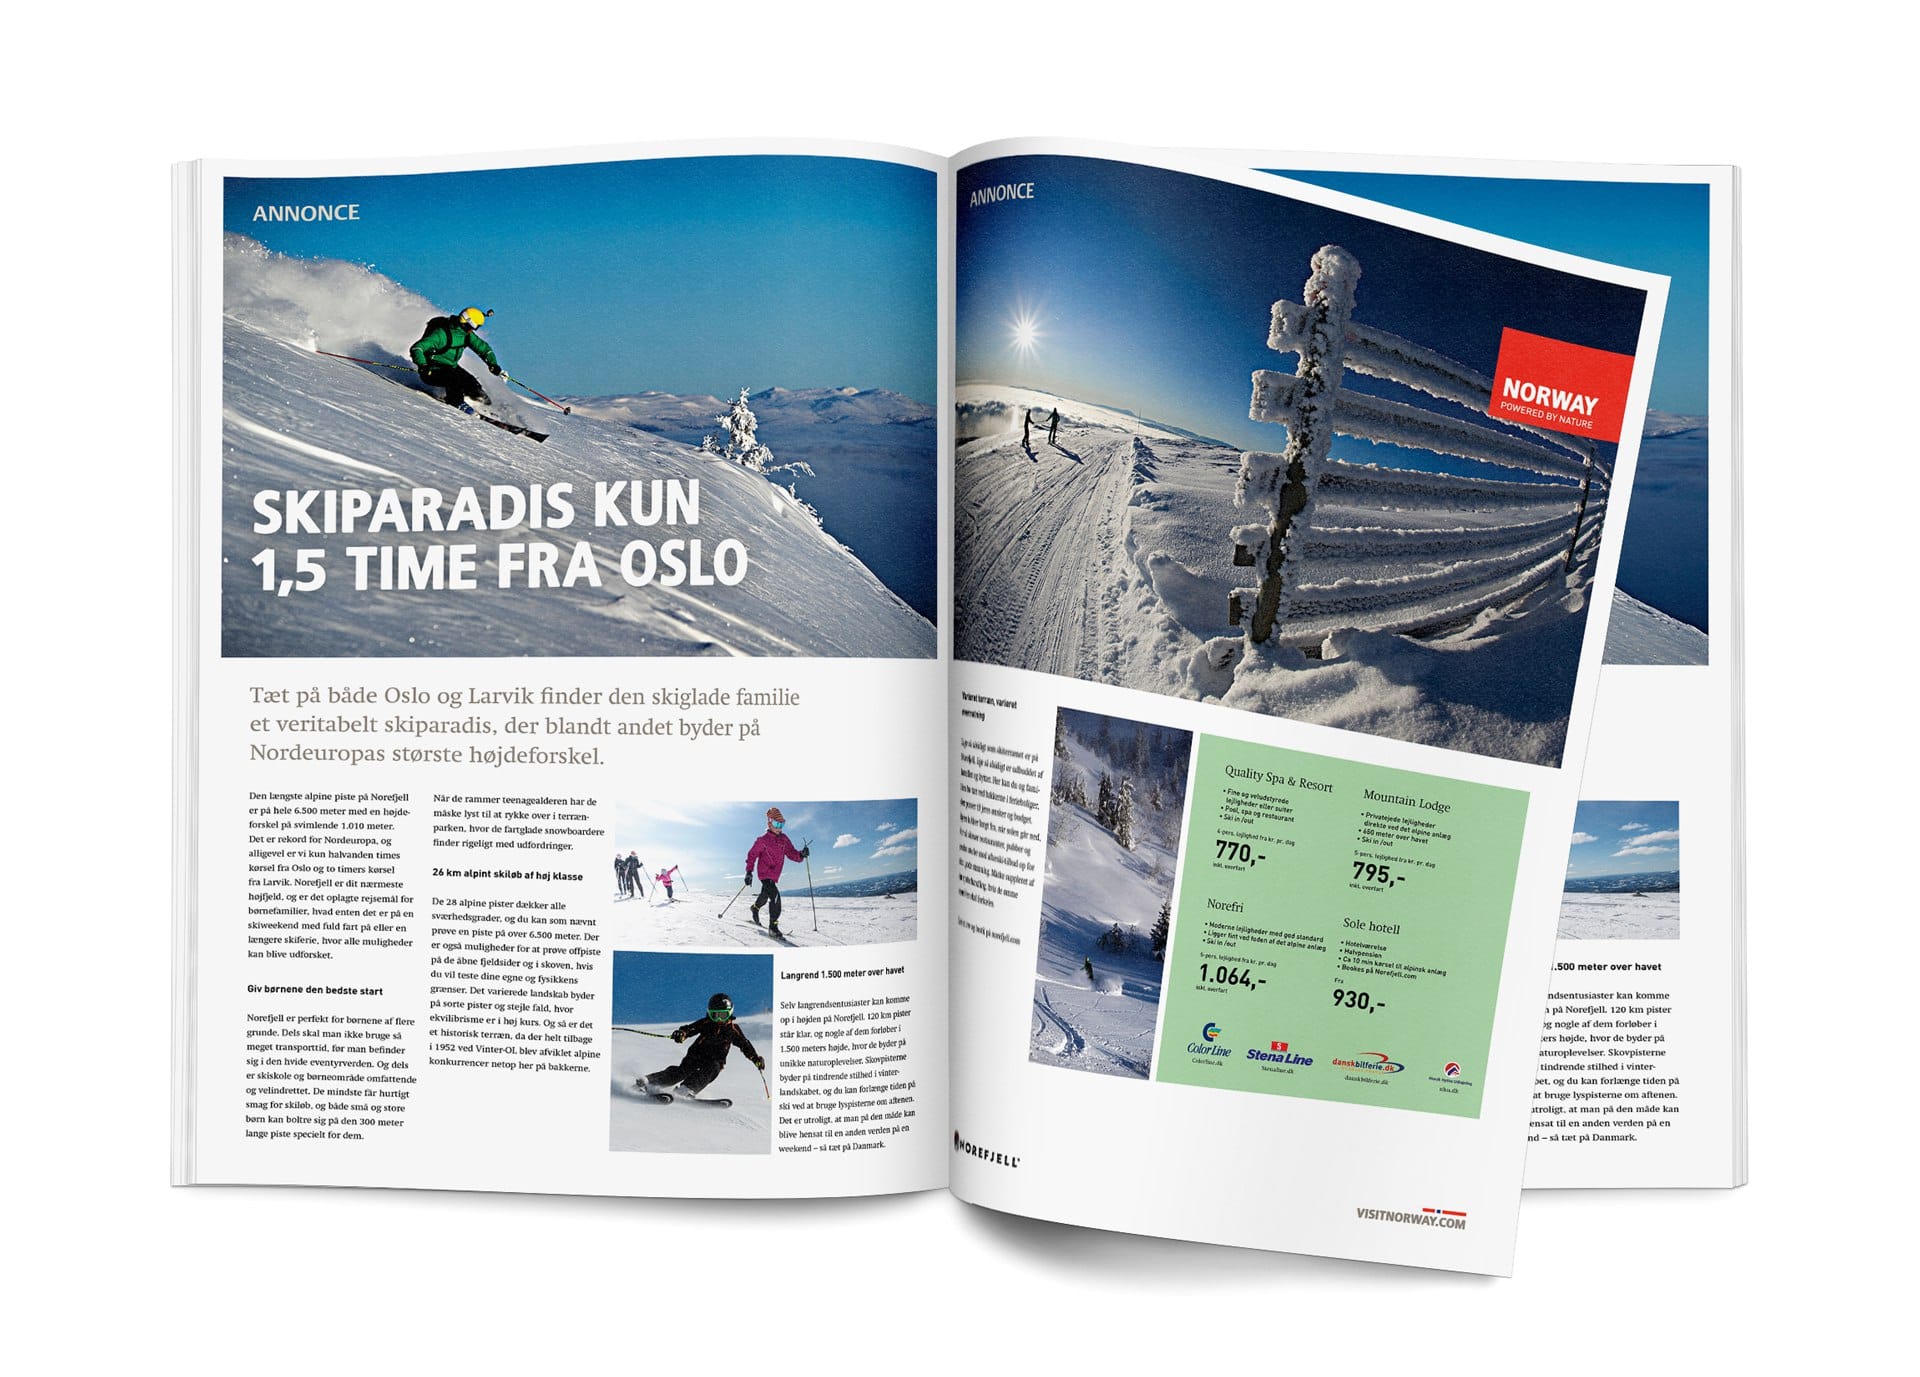 Portfolio case - Integreret vinter kampagne til Visit Norway, med design af annoncer til landets dagblade og magasiner, fulgt op af Facebook og banner kampagne